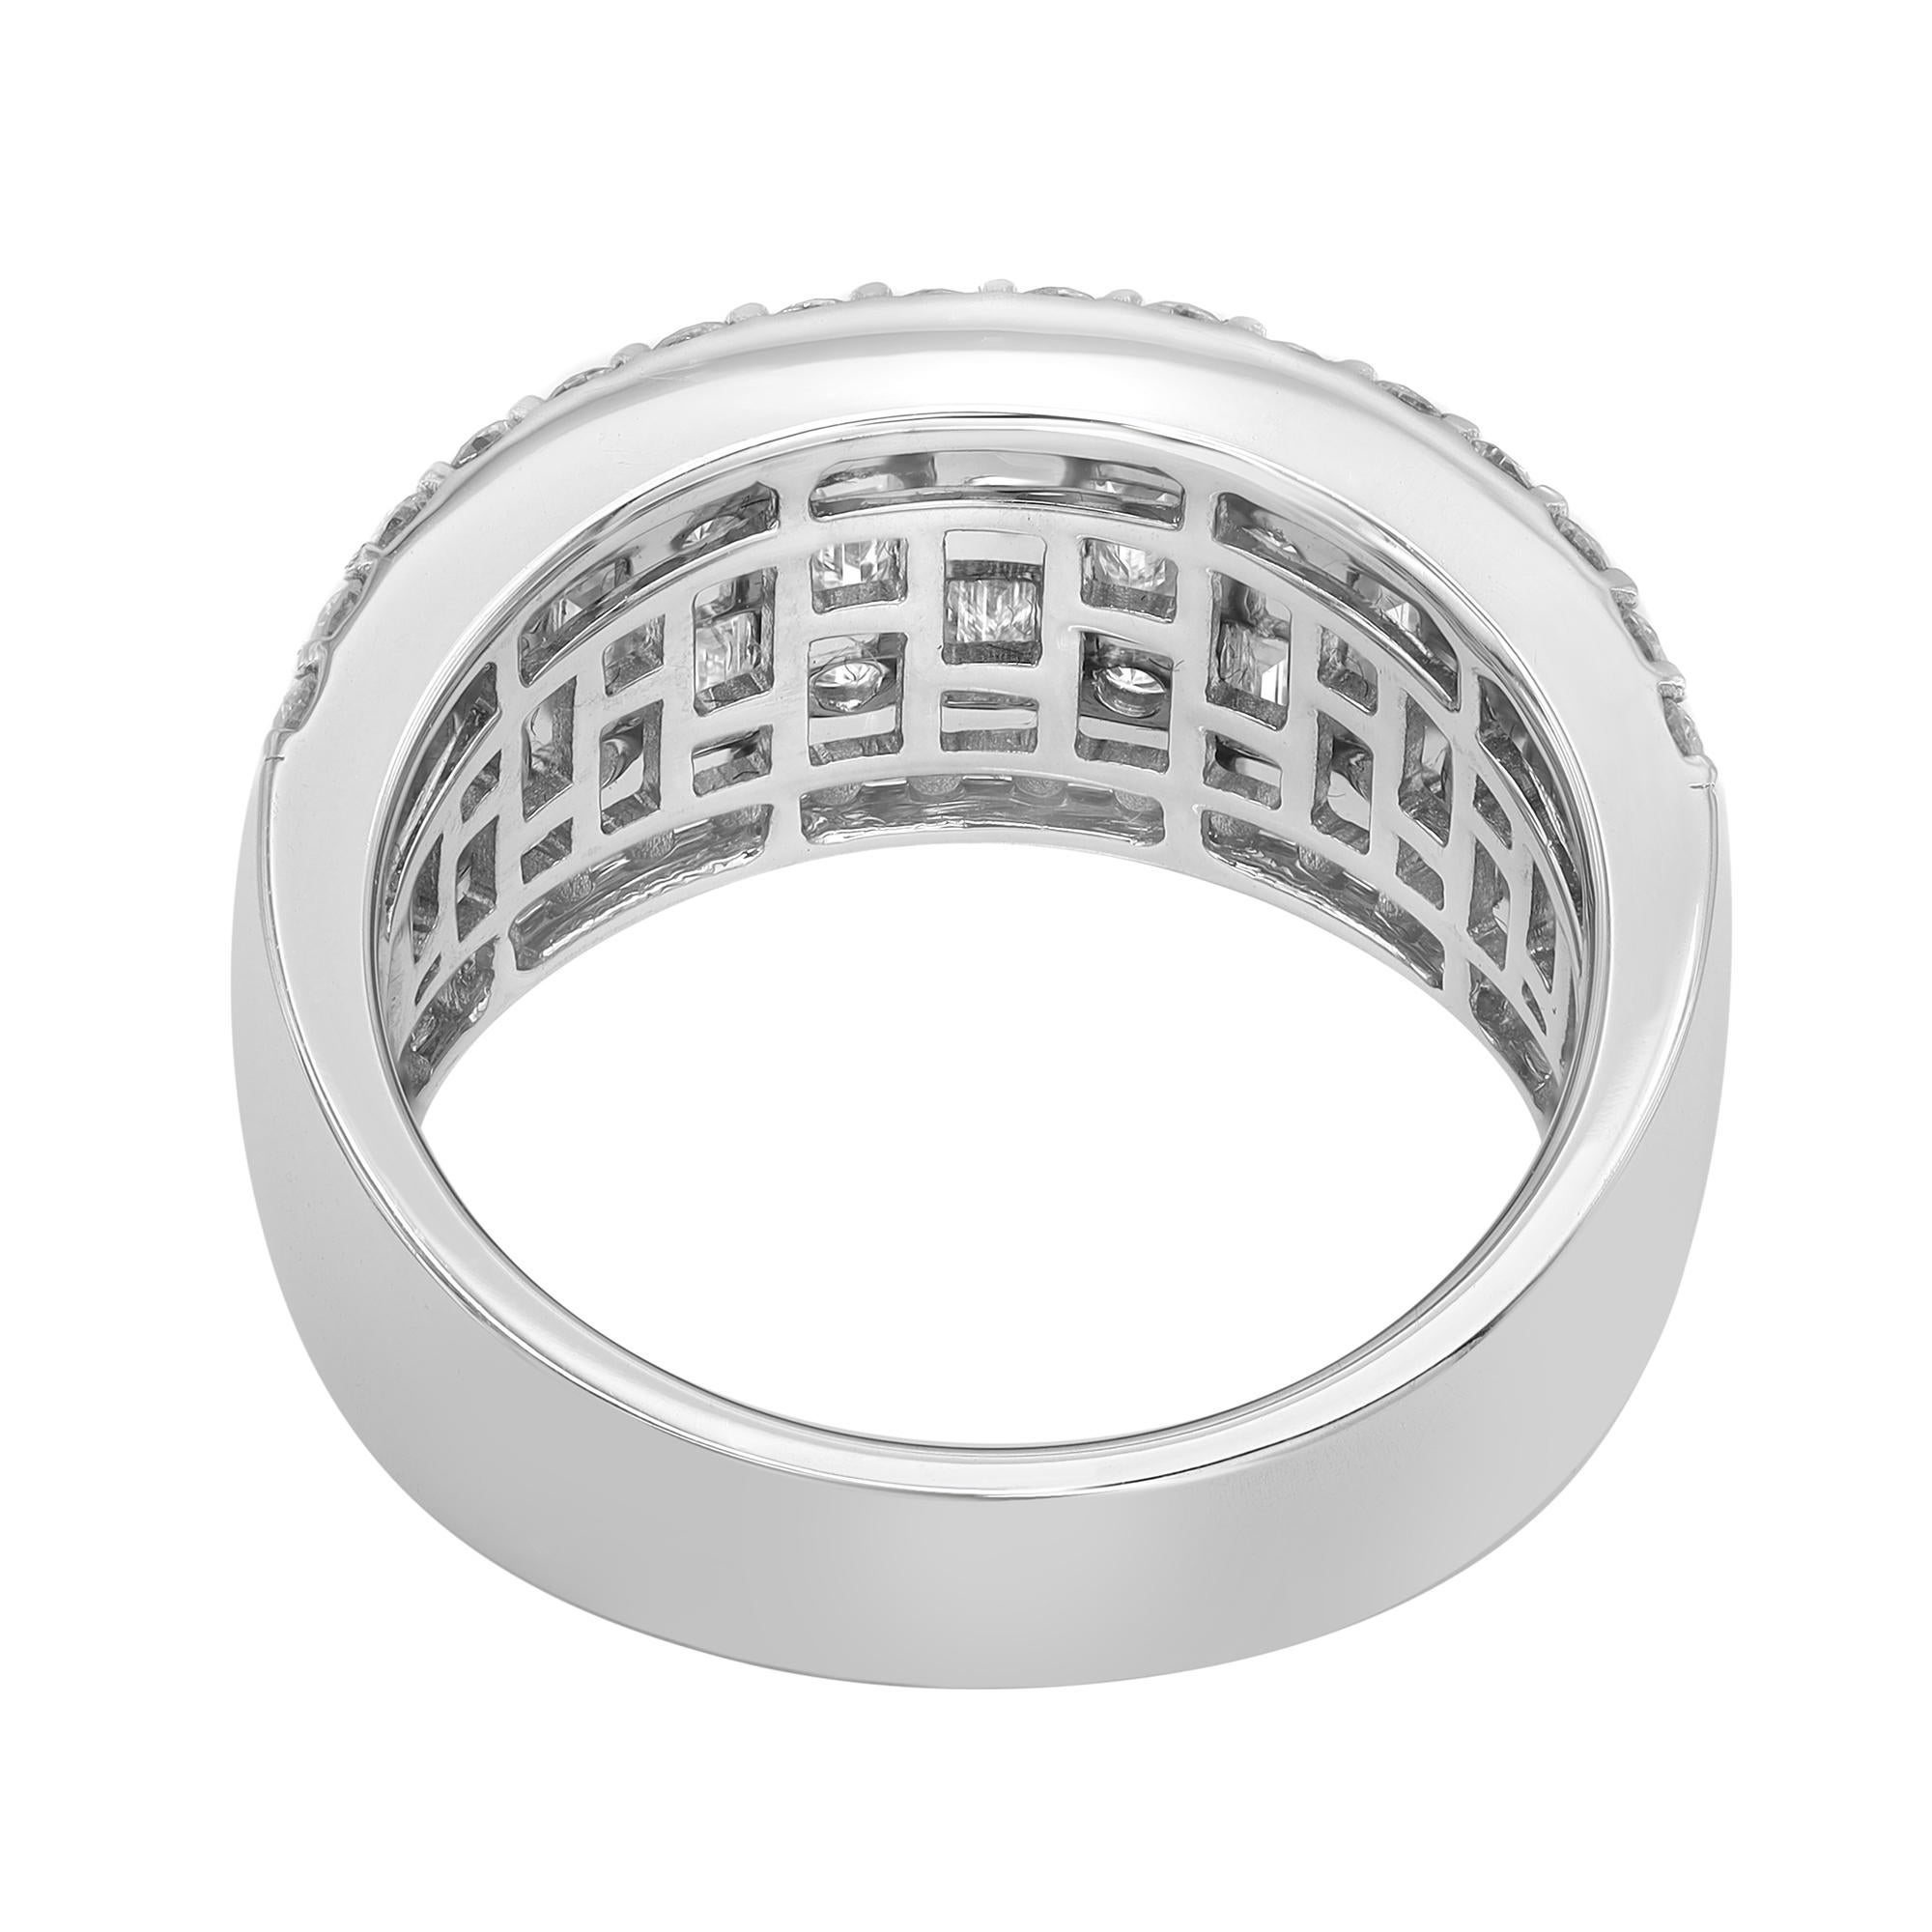 Modern Rachel Koen Baguette Round Cut Diamond Ring 18K White Gold 2.11Cttw For Sale